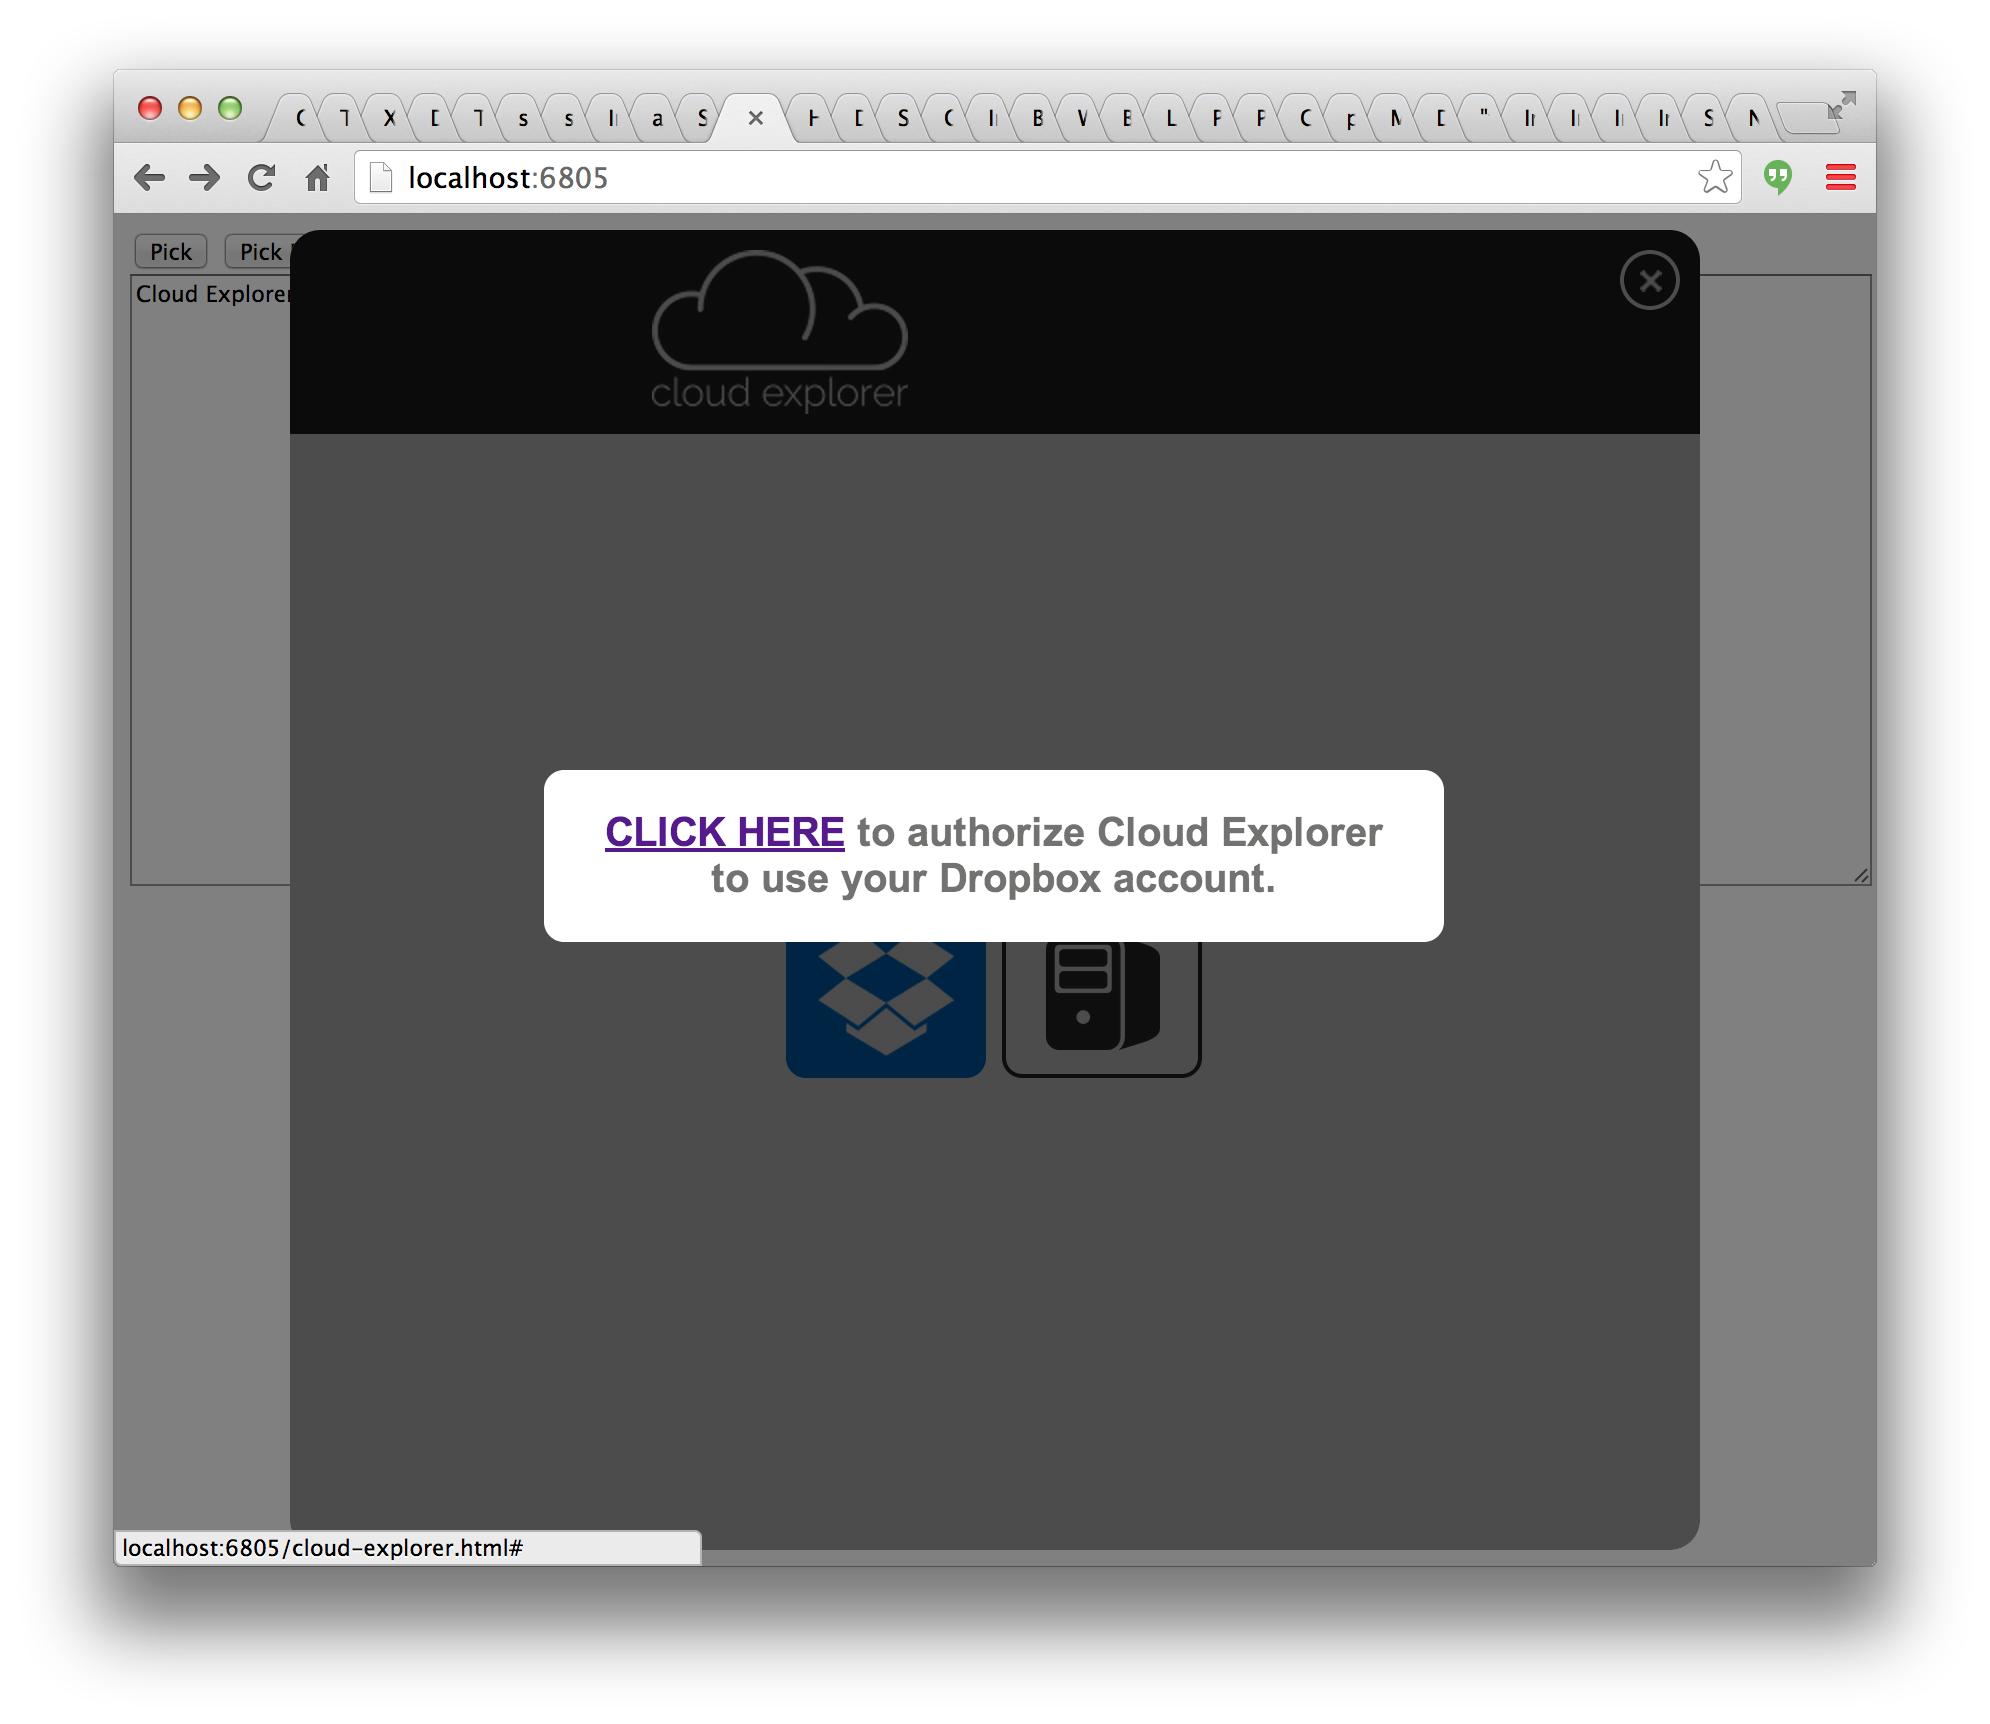 Cloud explorer user interface